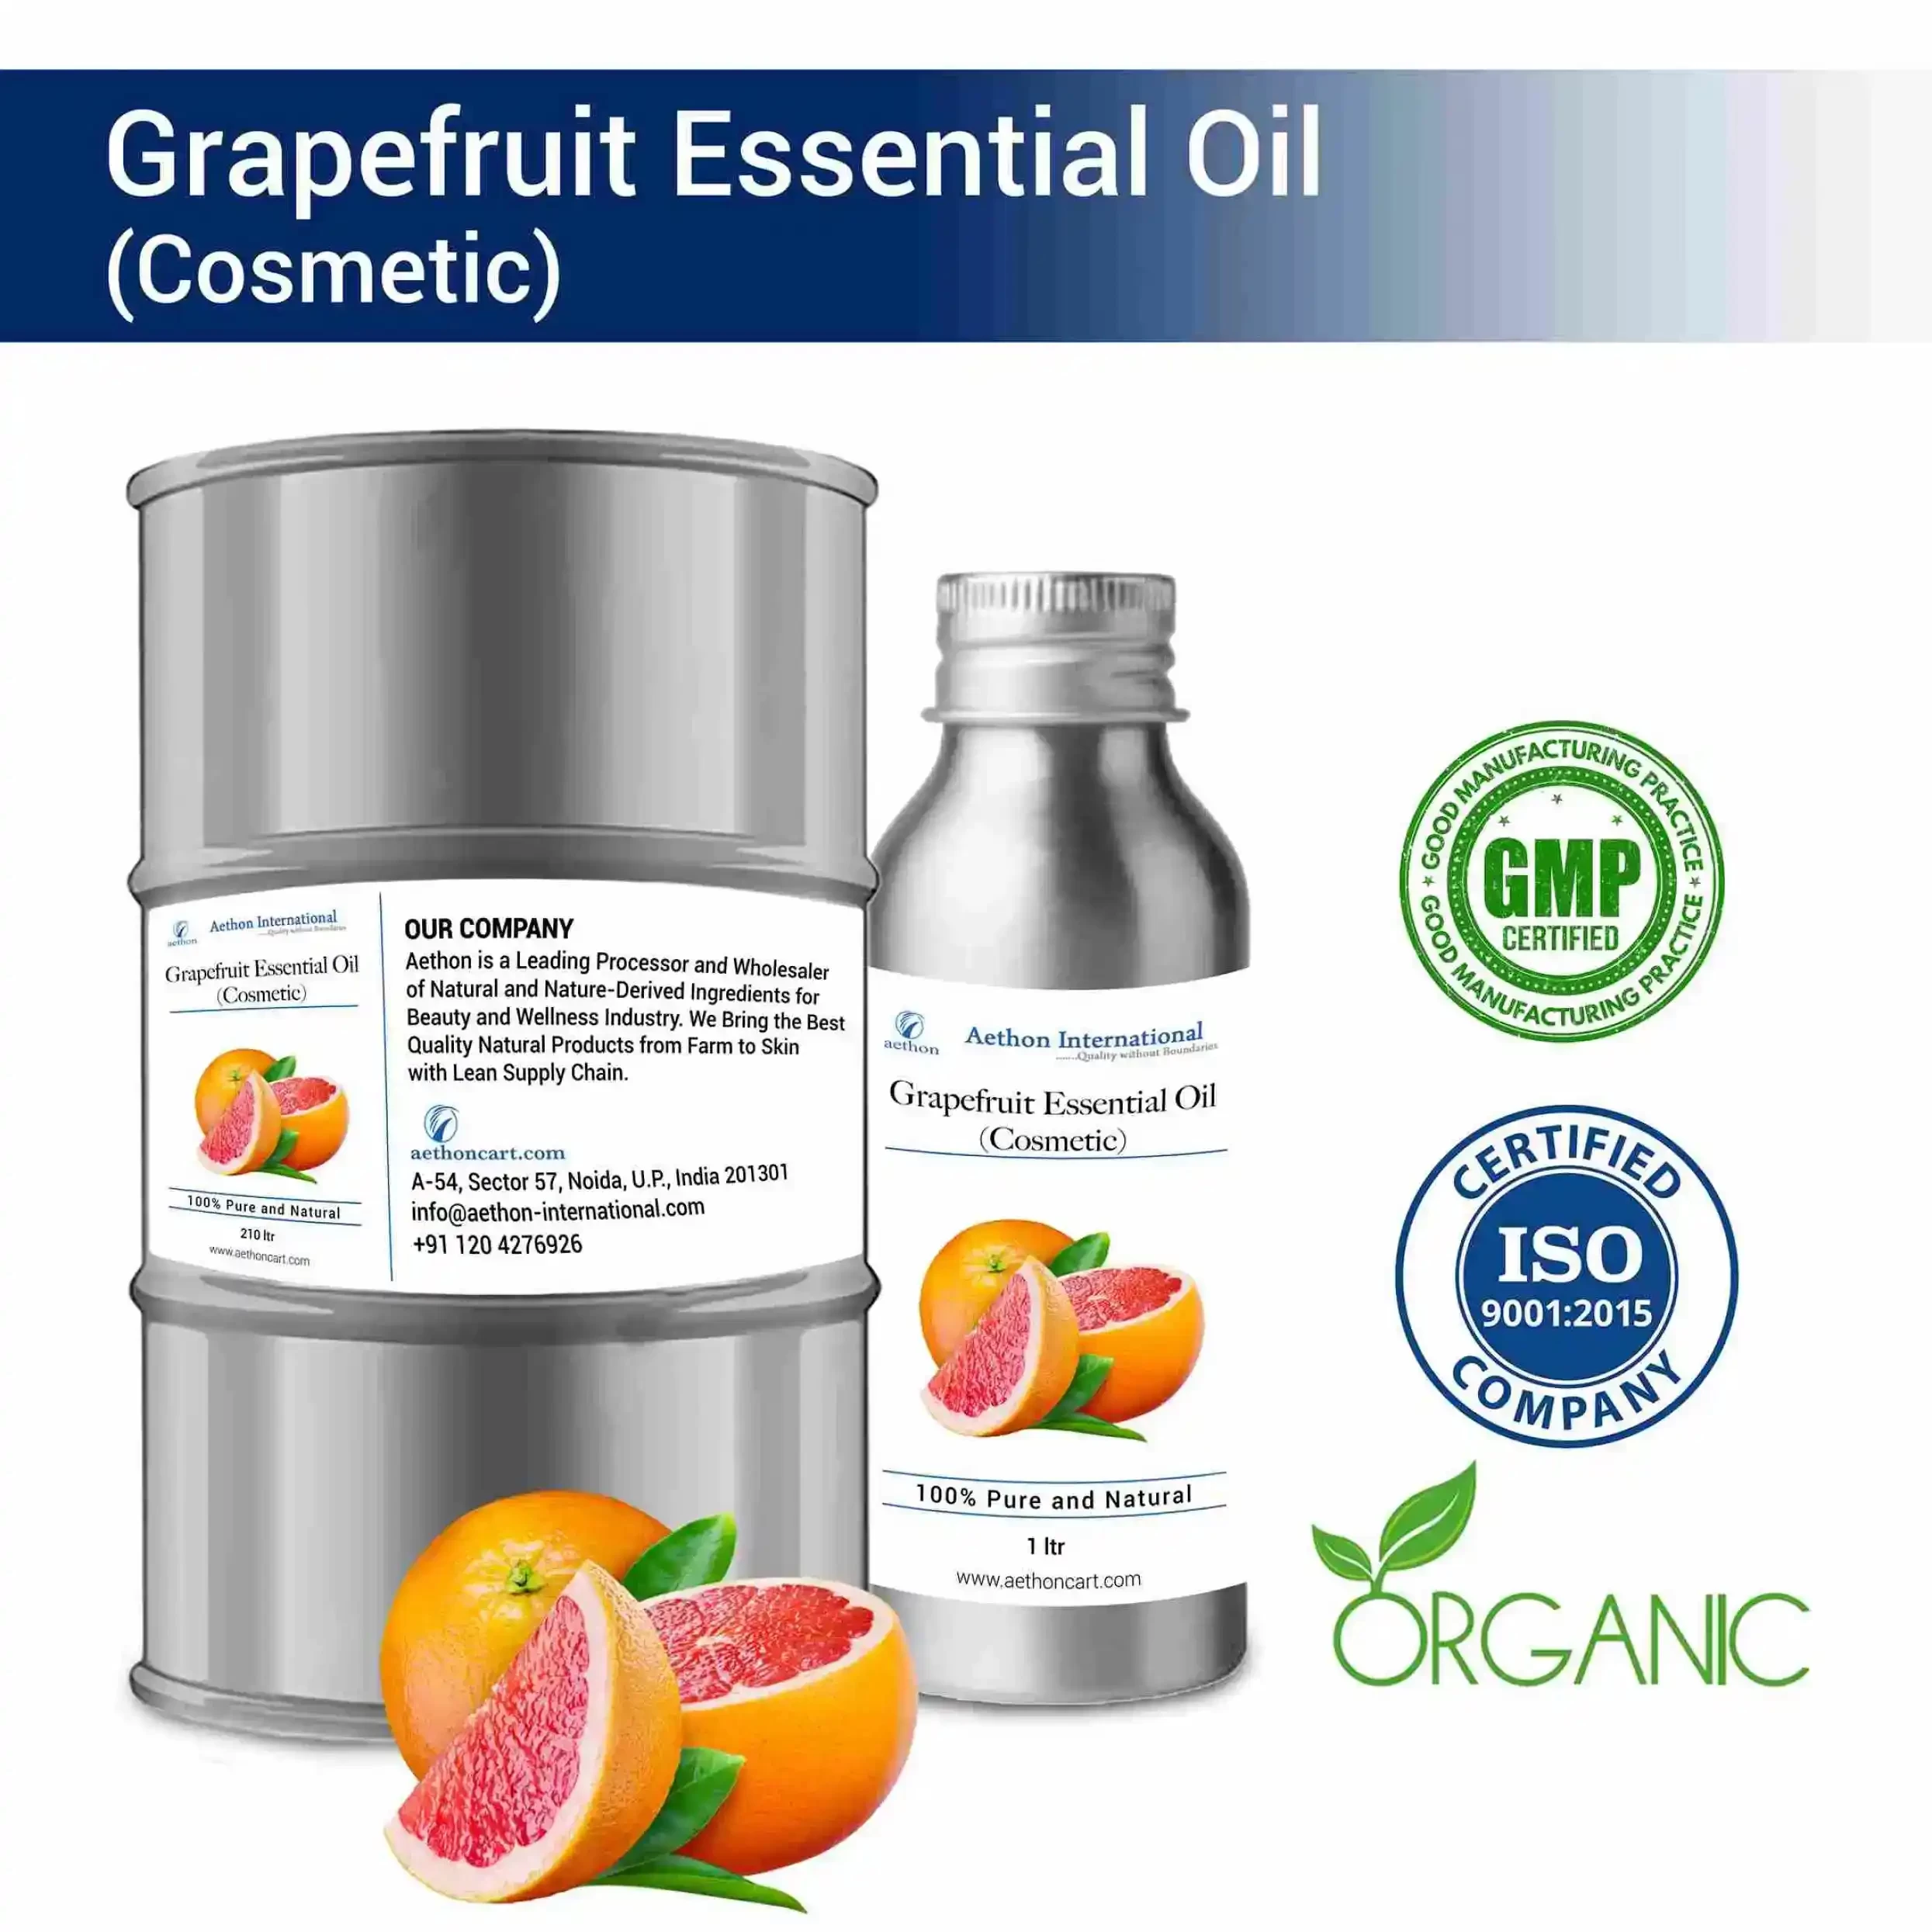 Grapefruit Essential Oil (Cosmetic)